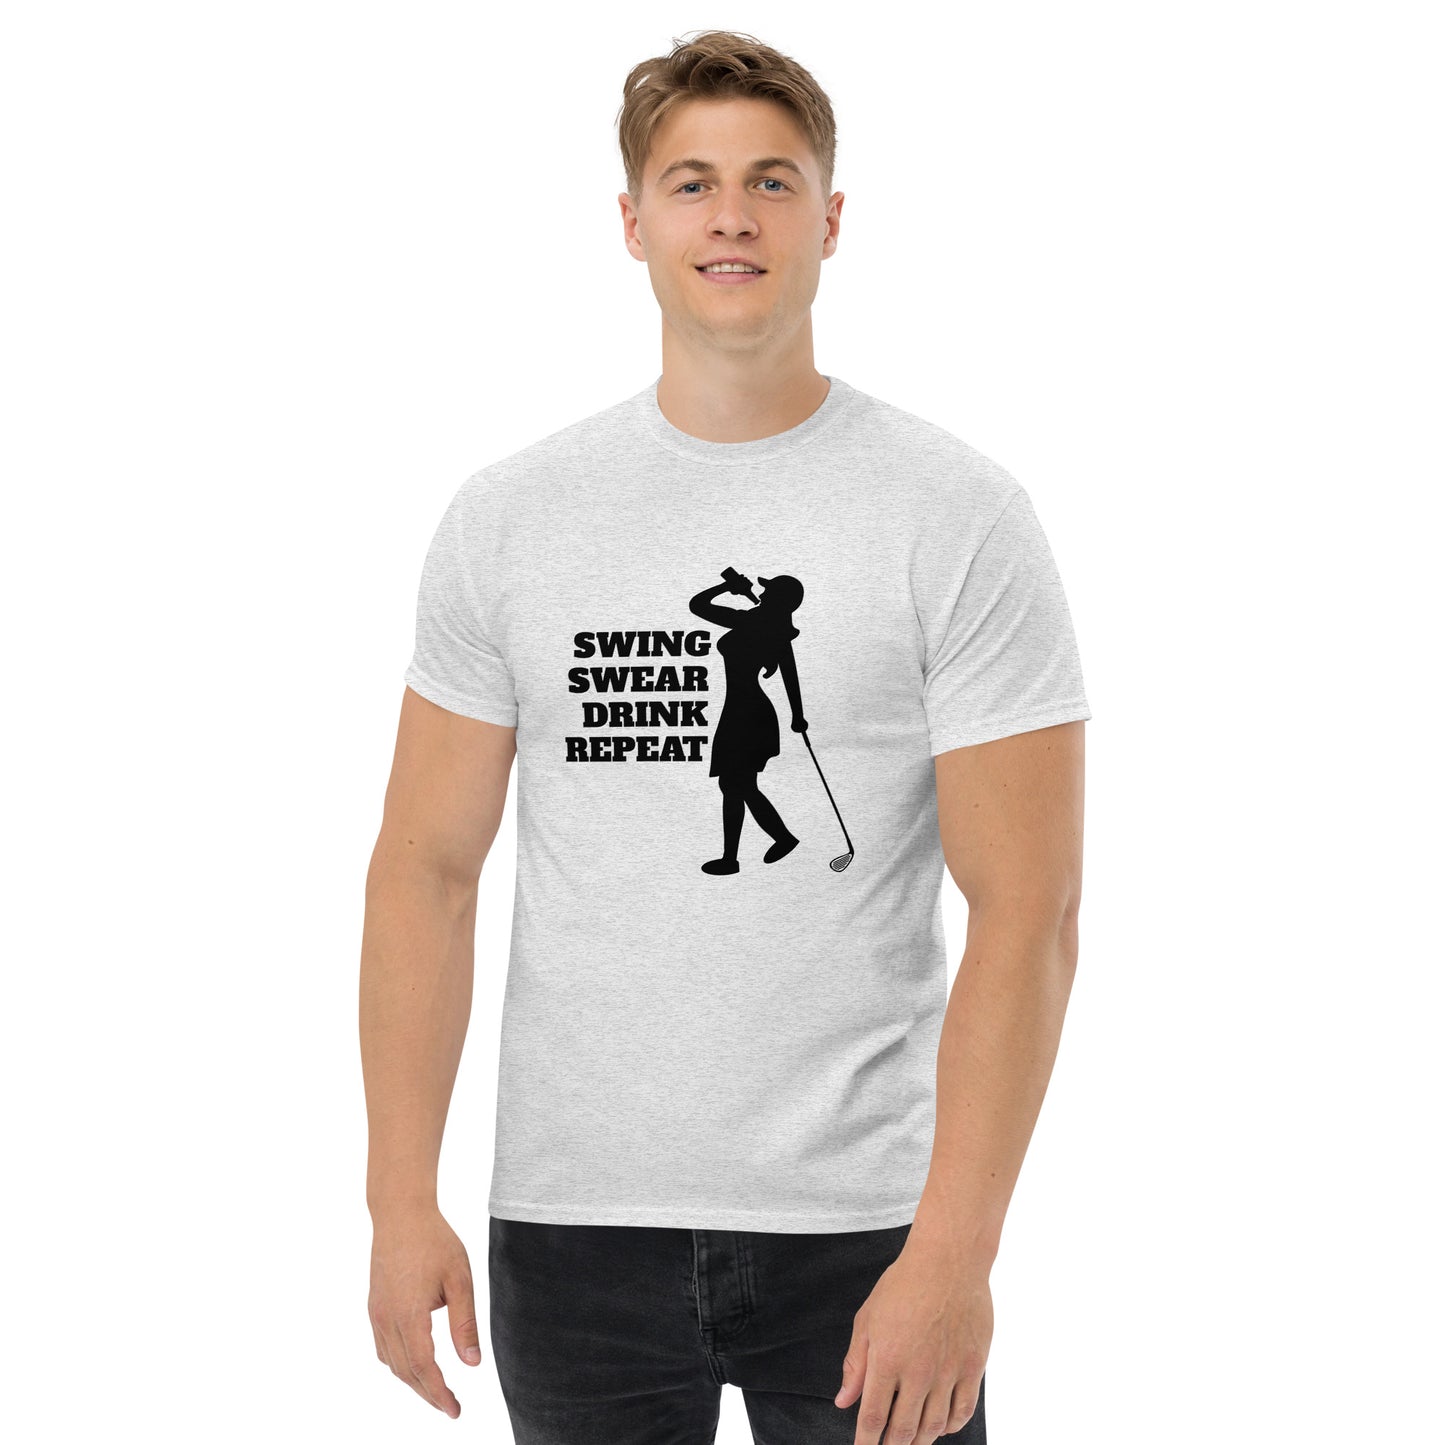 Swing, Swear, Drink, Repeat Woman T-Shirt